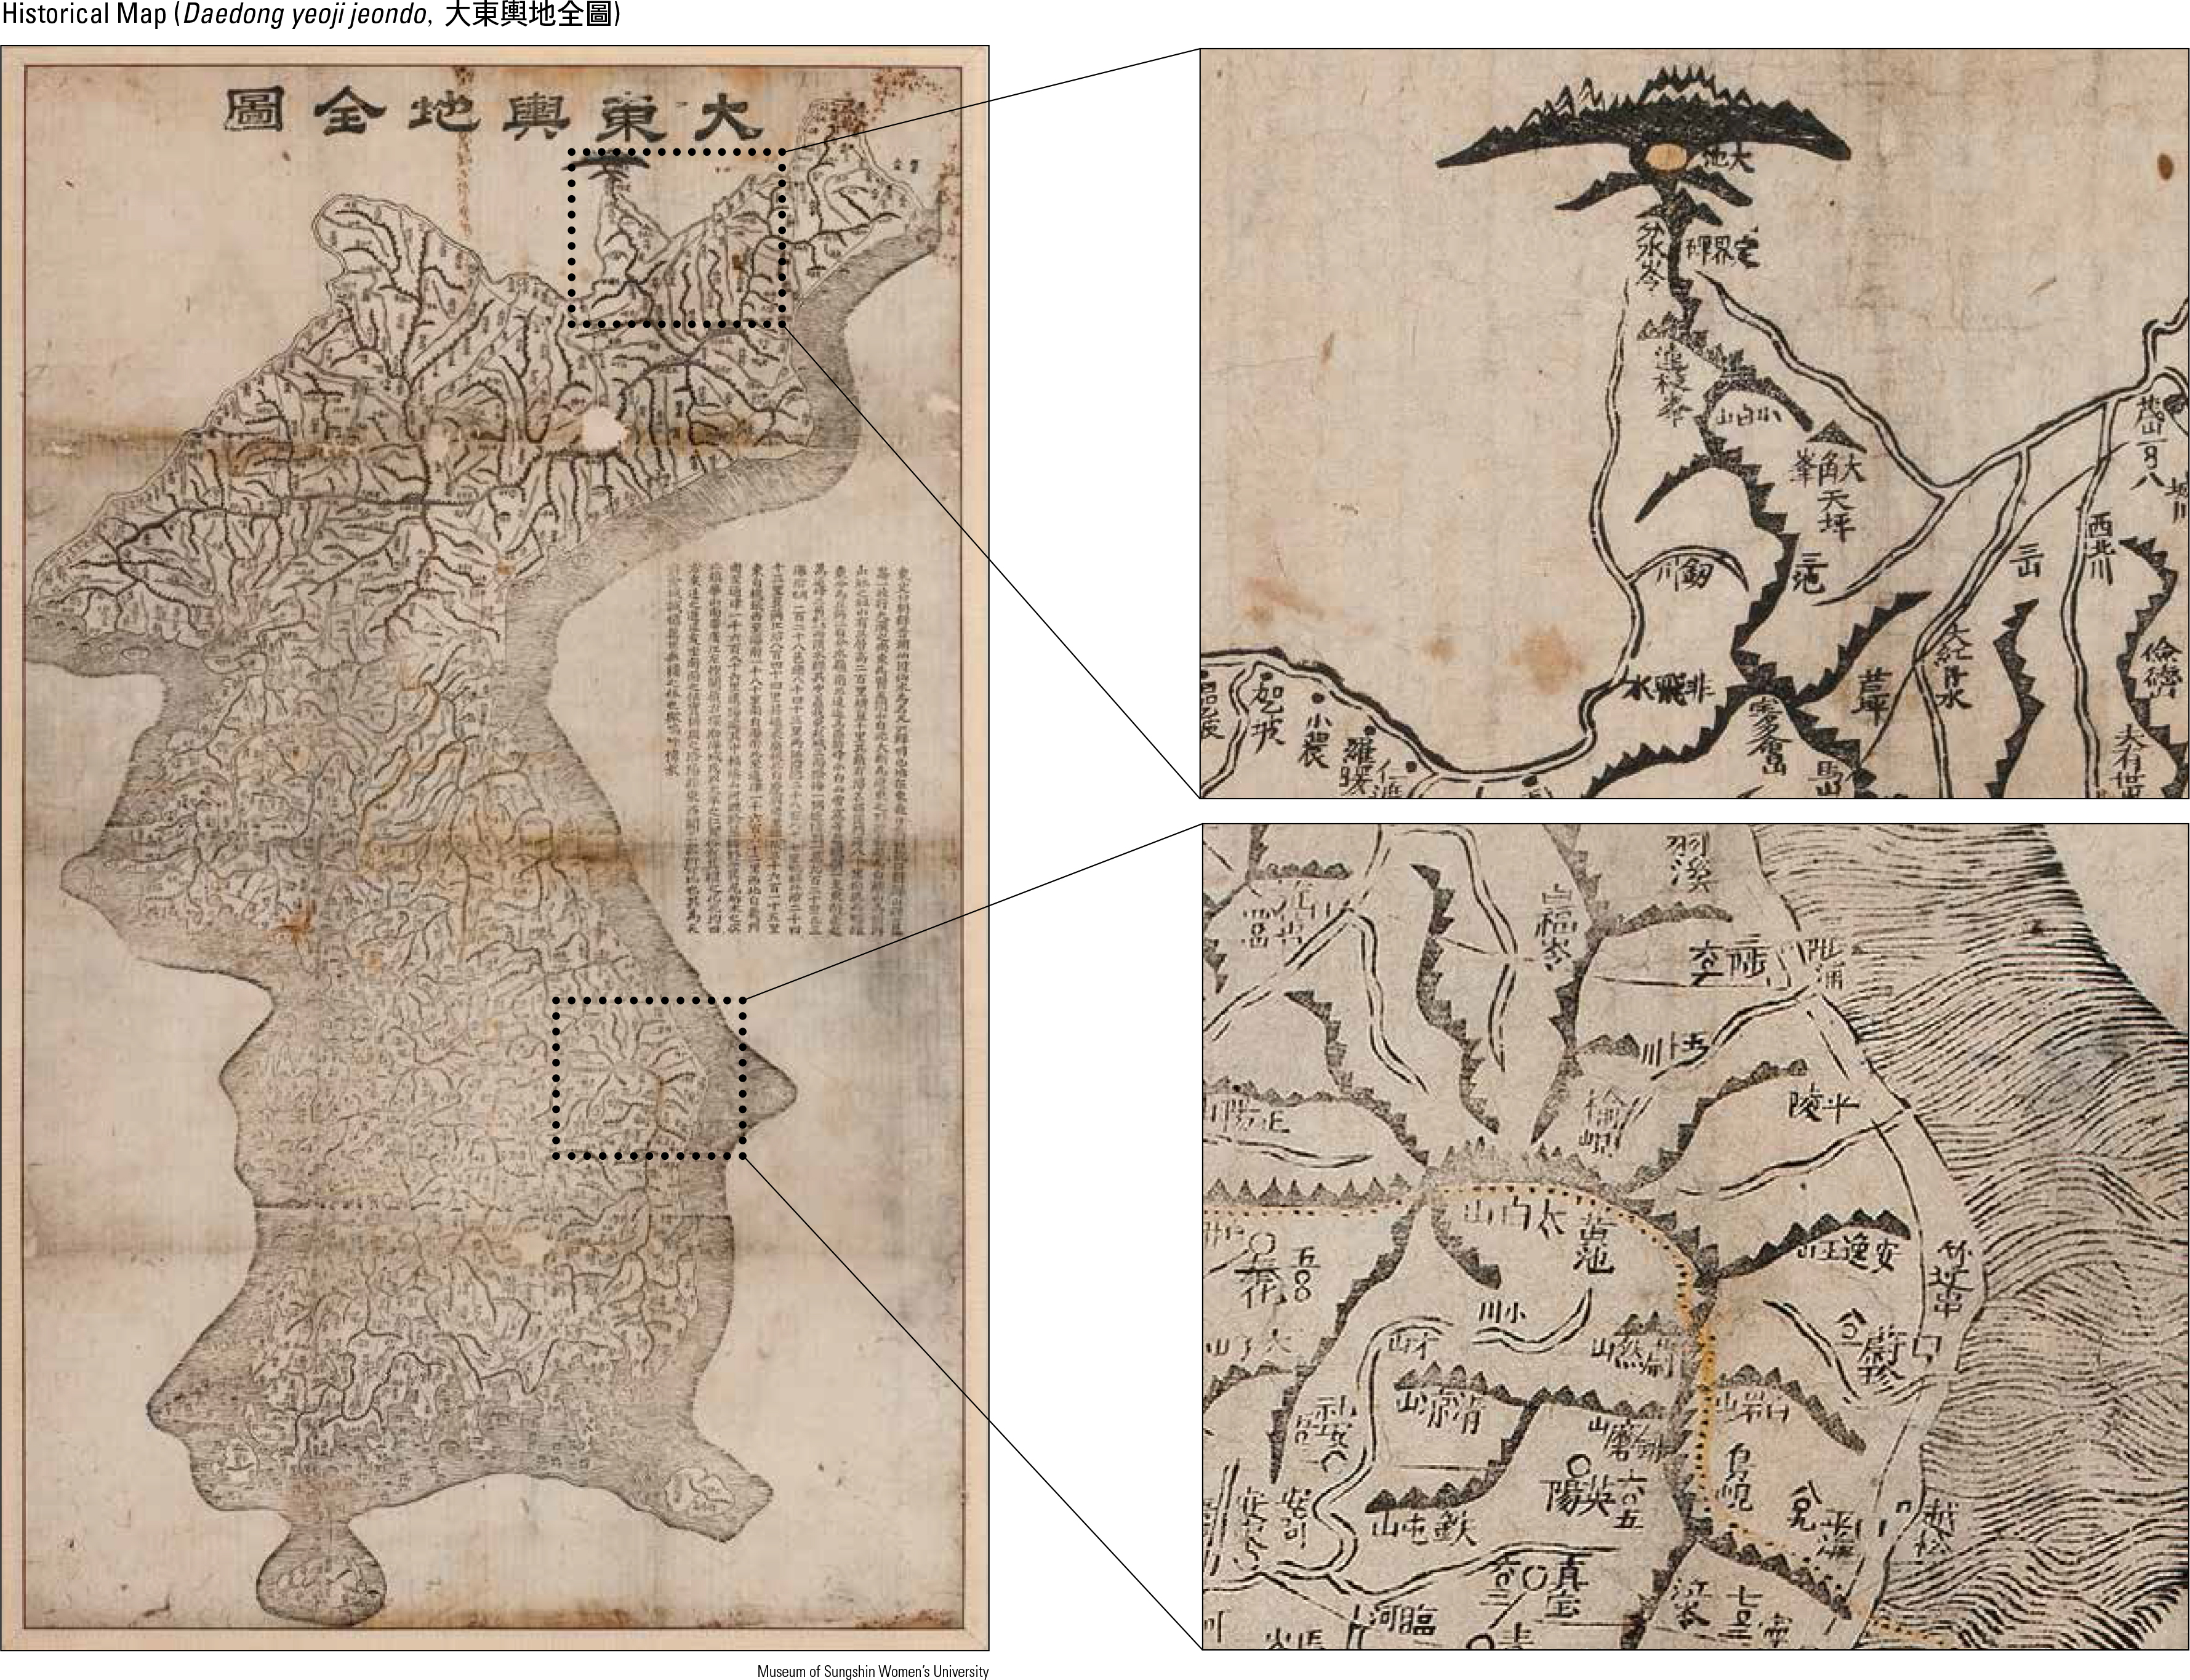 Historical Map (Daedong yeoji jeondo, 大東輿地全圖)